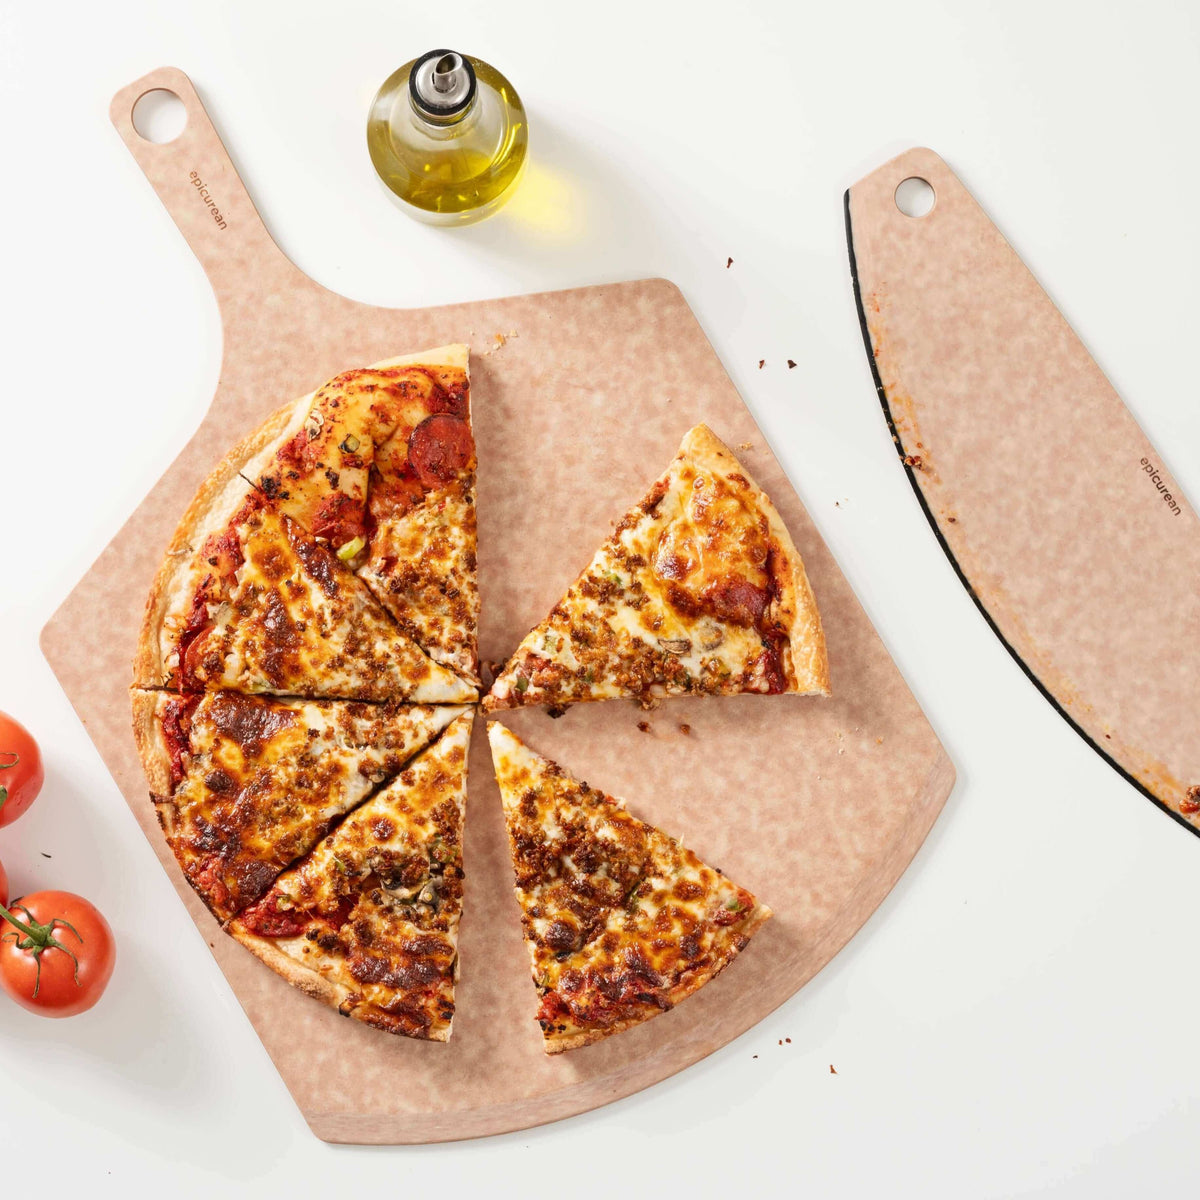 Epicurean Natural Slate Pizza Cutter